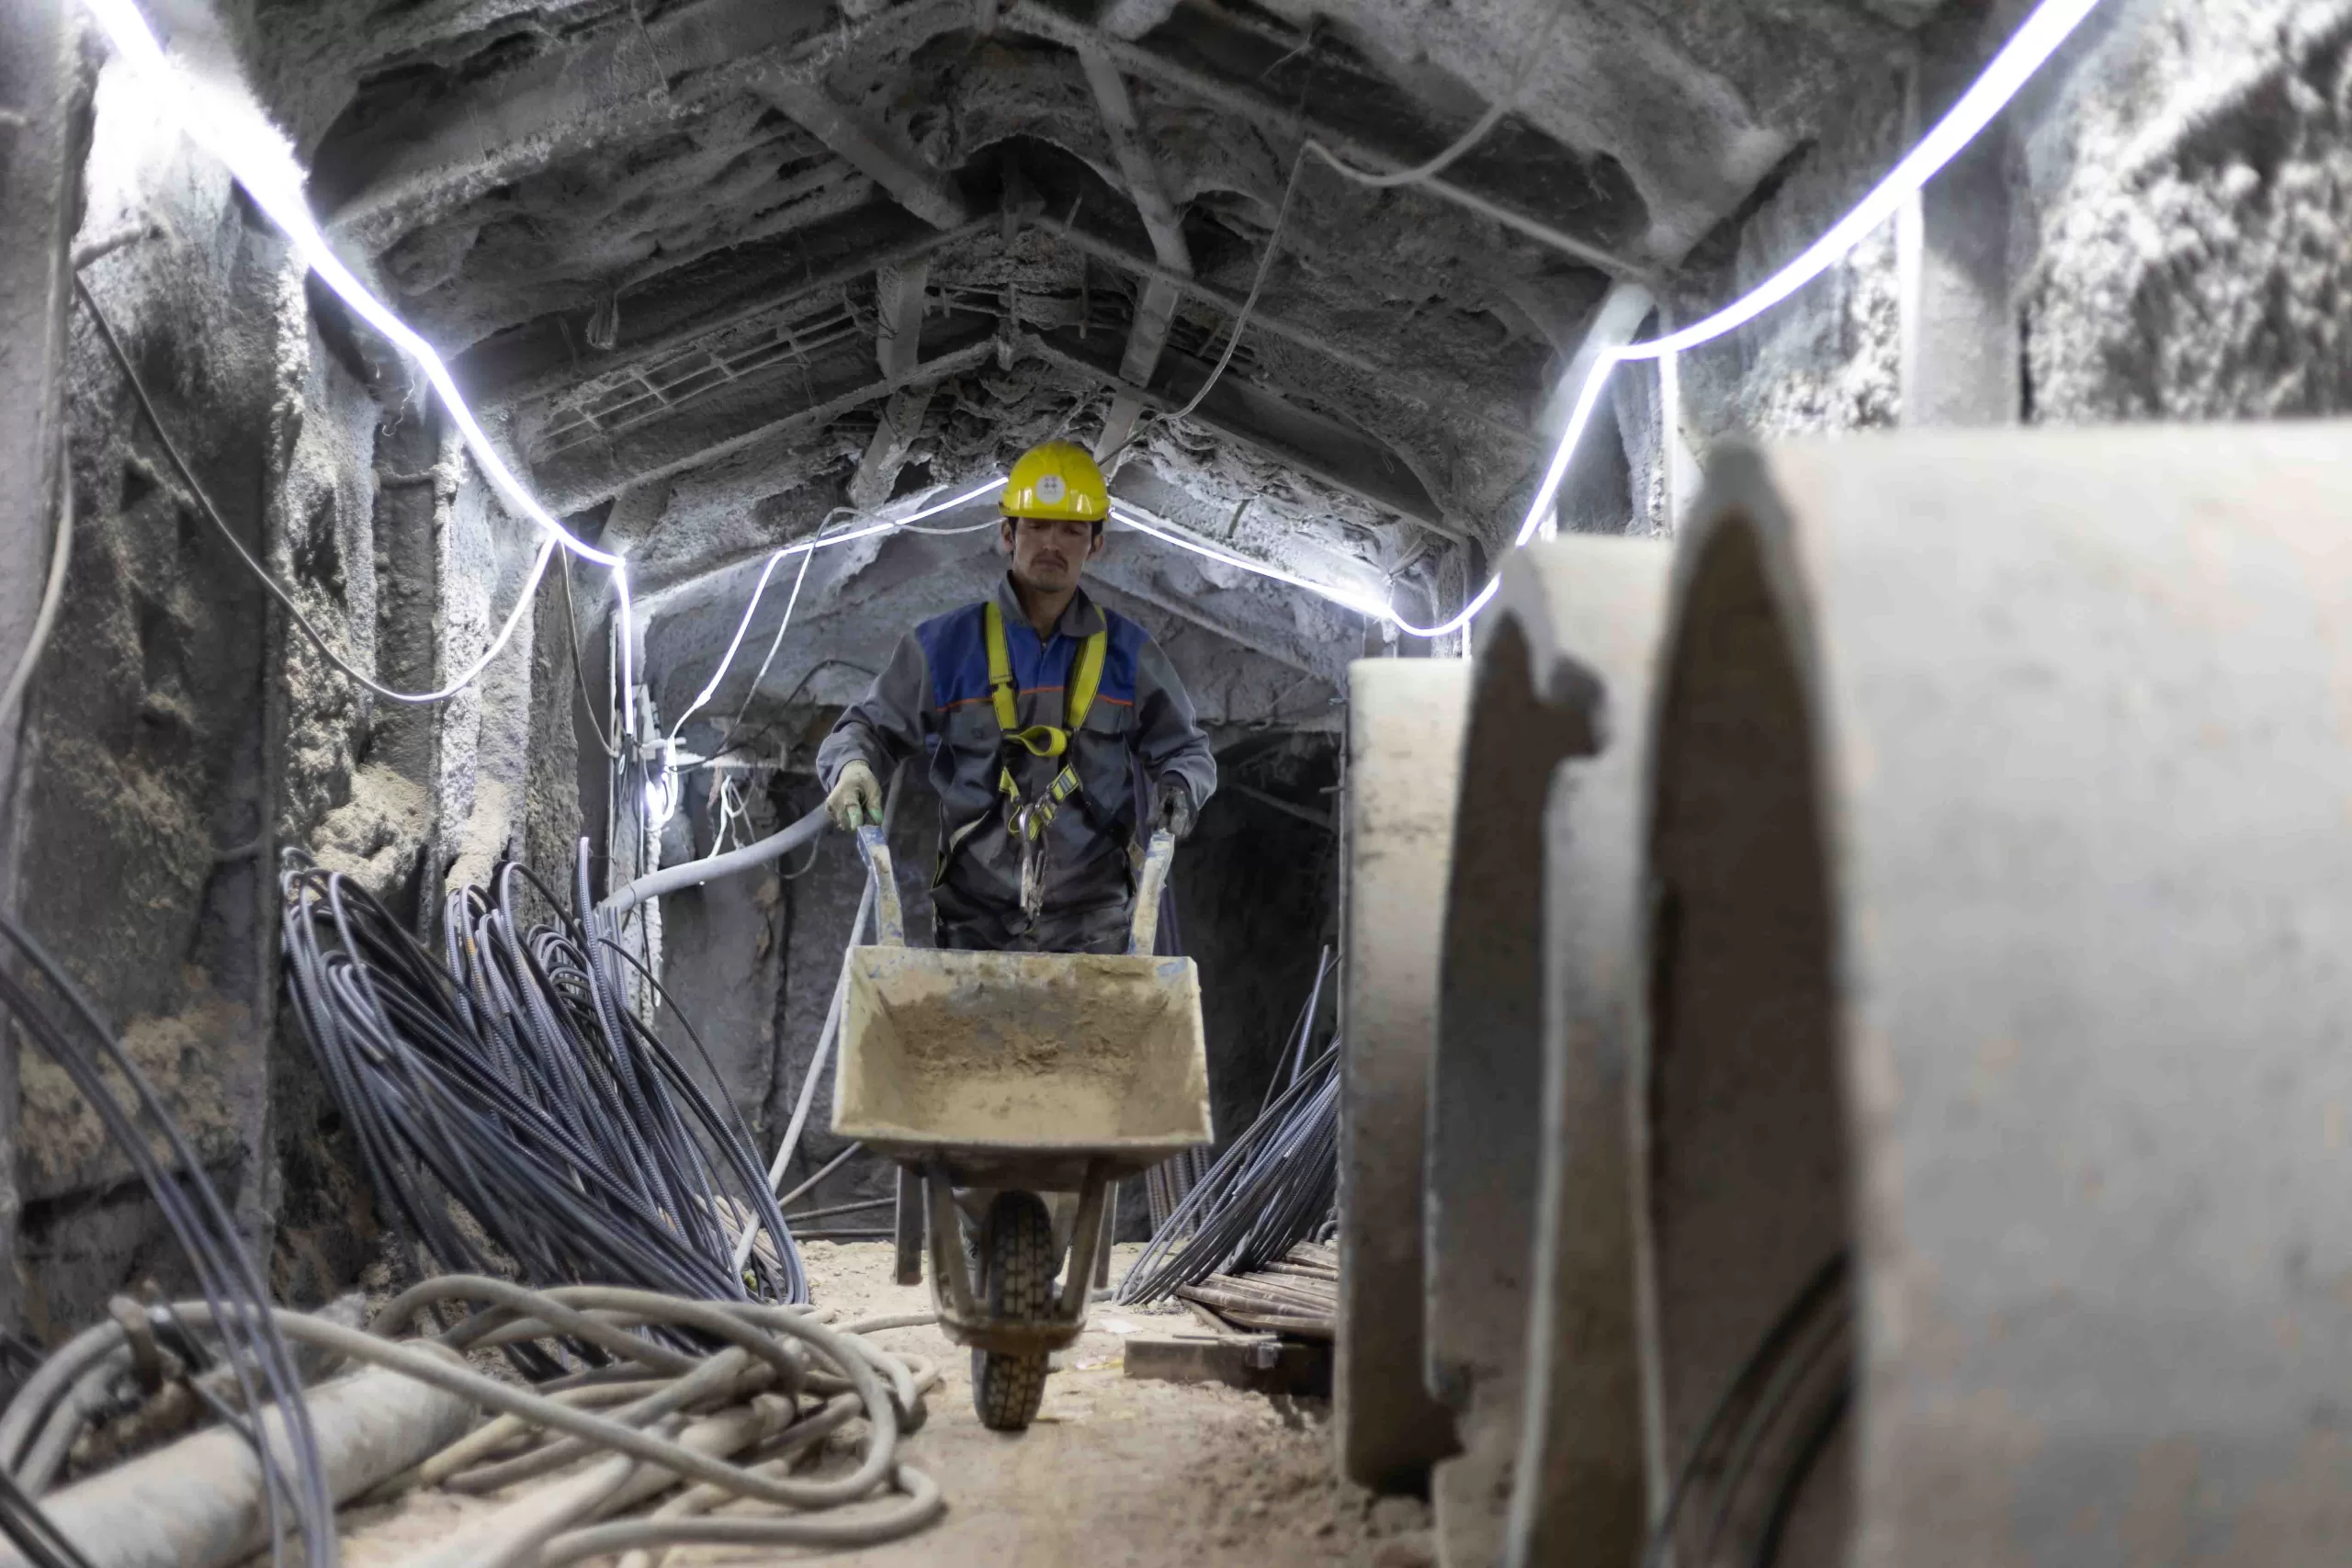 کارگری در حال کار در تونل زیر زمینی 26 دی 1402 مترو میدان نقش جهان اصفهان